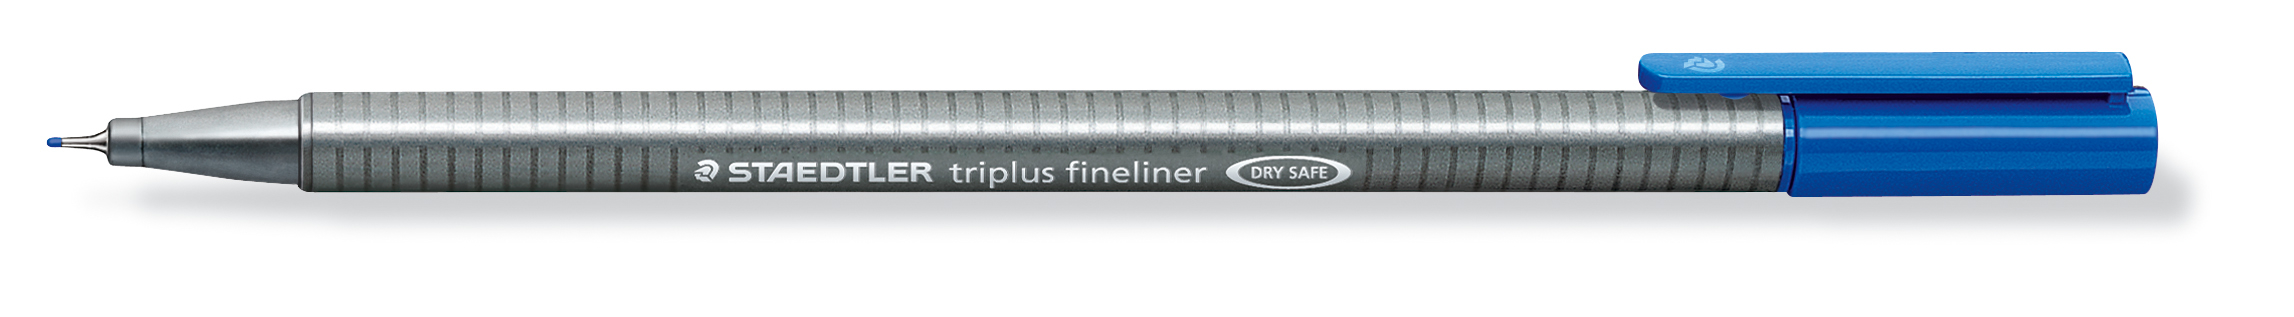 STAEDTLER Triplus Fineliner 0,3mm 334-37 bleu